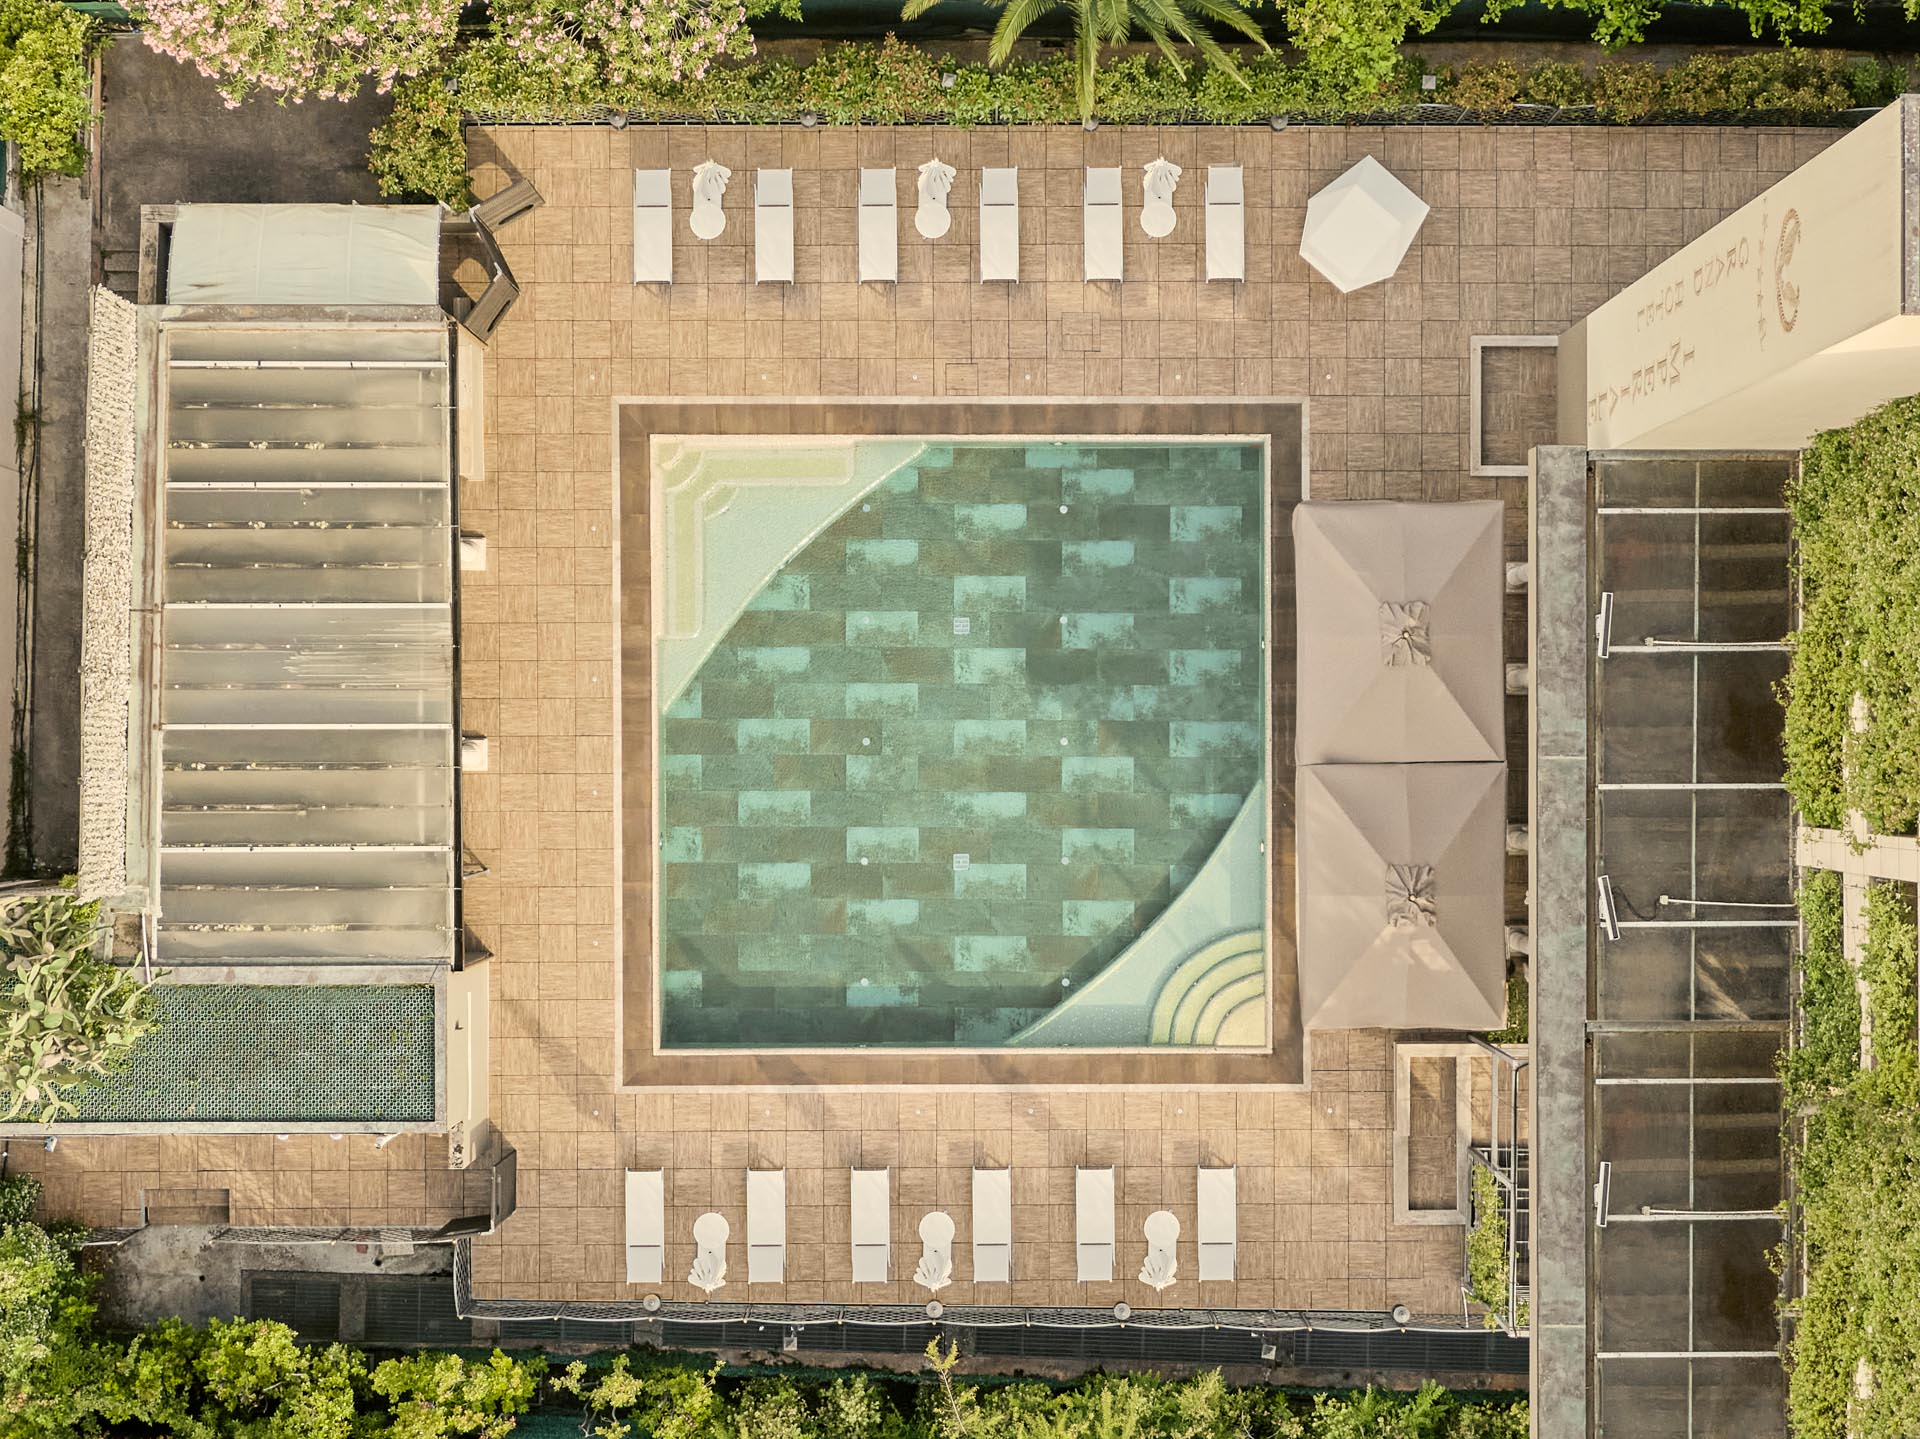 Aerial of Pool